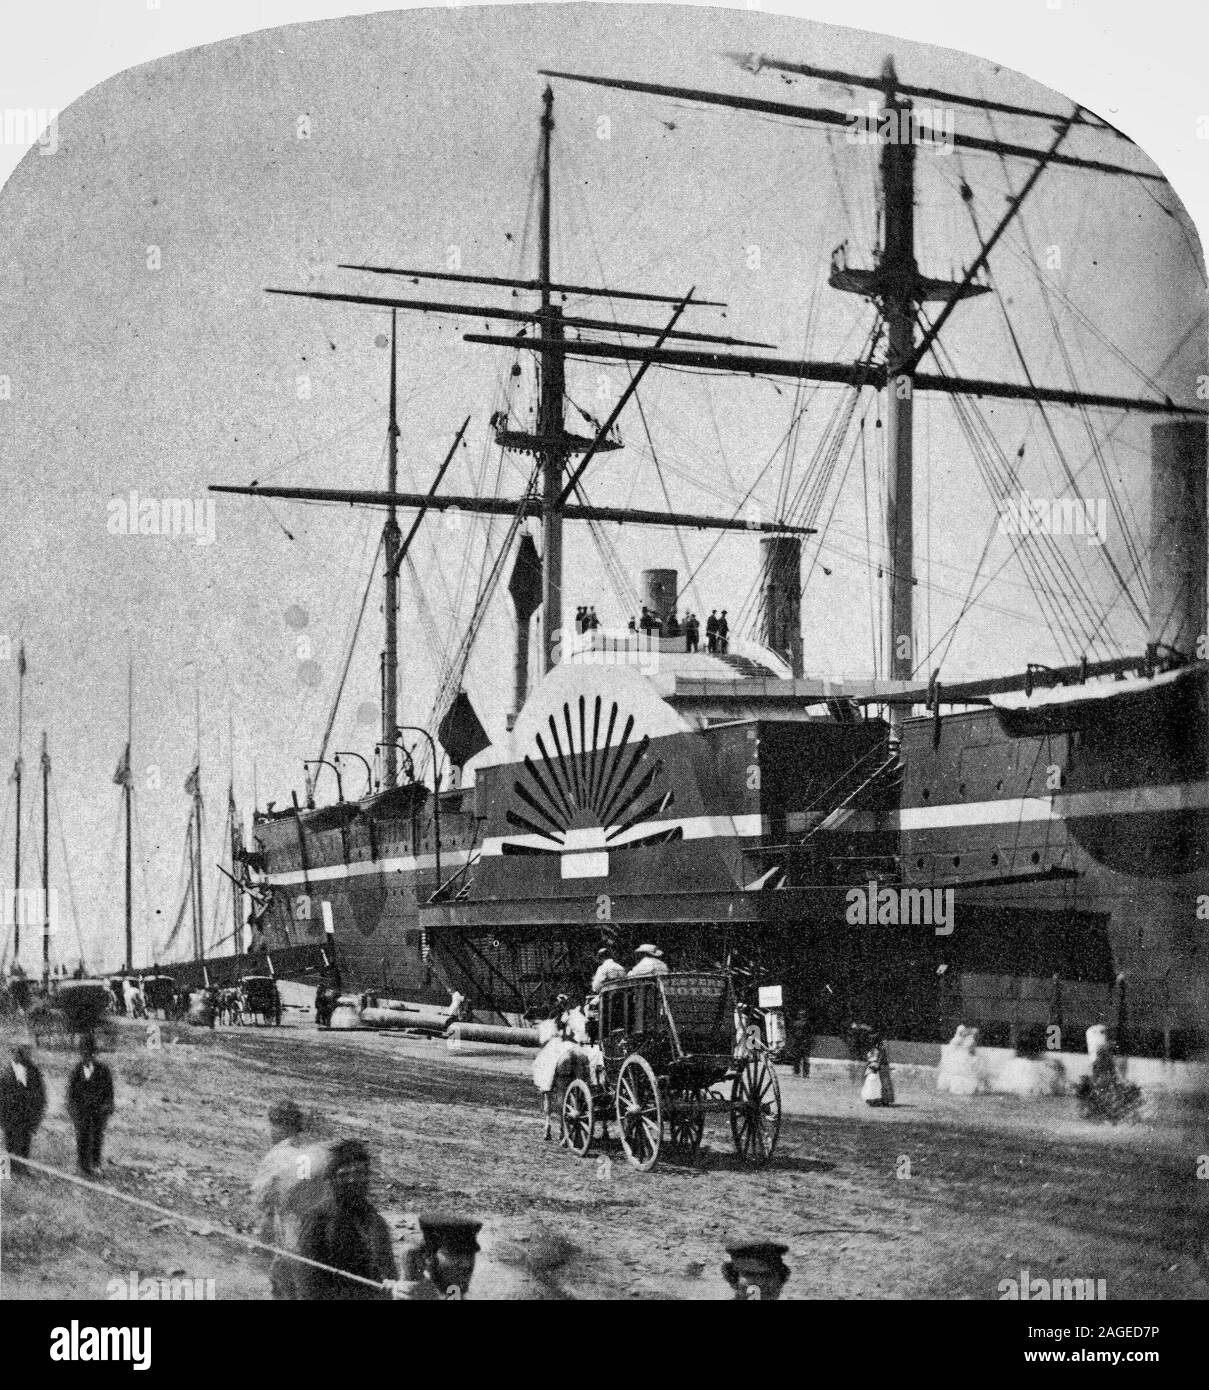 SS Great Eastern en el puerto de Nueva York, 1860 - probablemente en un muelle sobre el Río Hudson entre West 11th y 12th Streets, su habitual Nueva York de atraque. Foto de stock